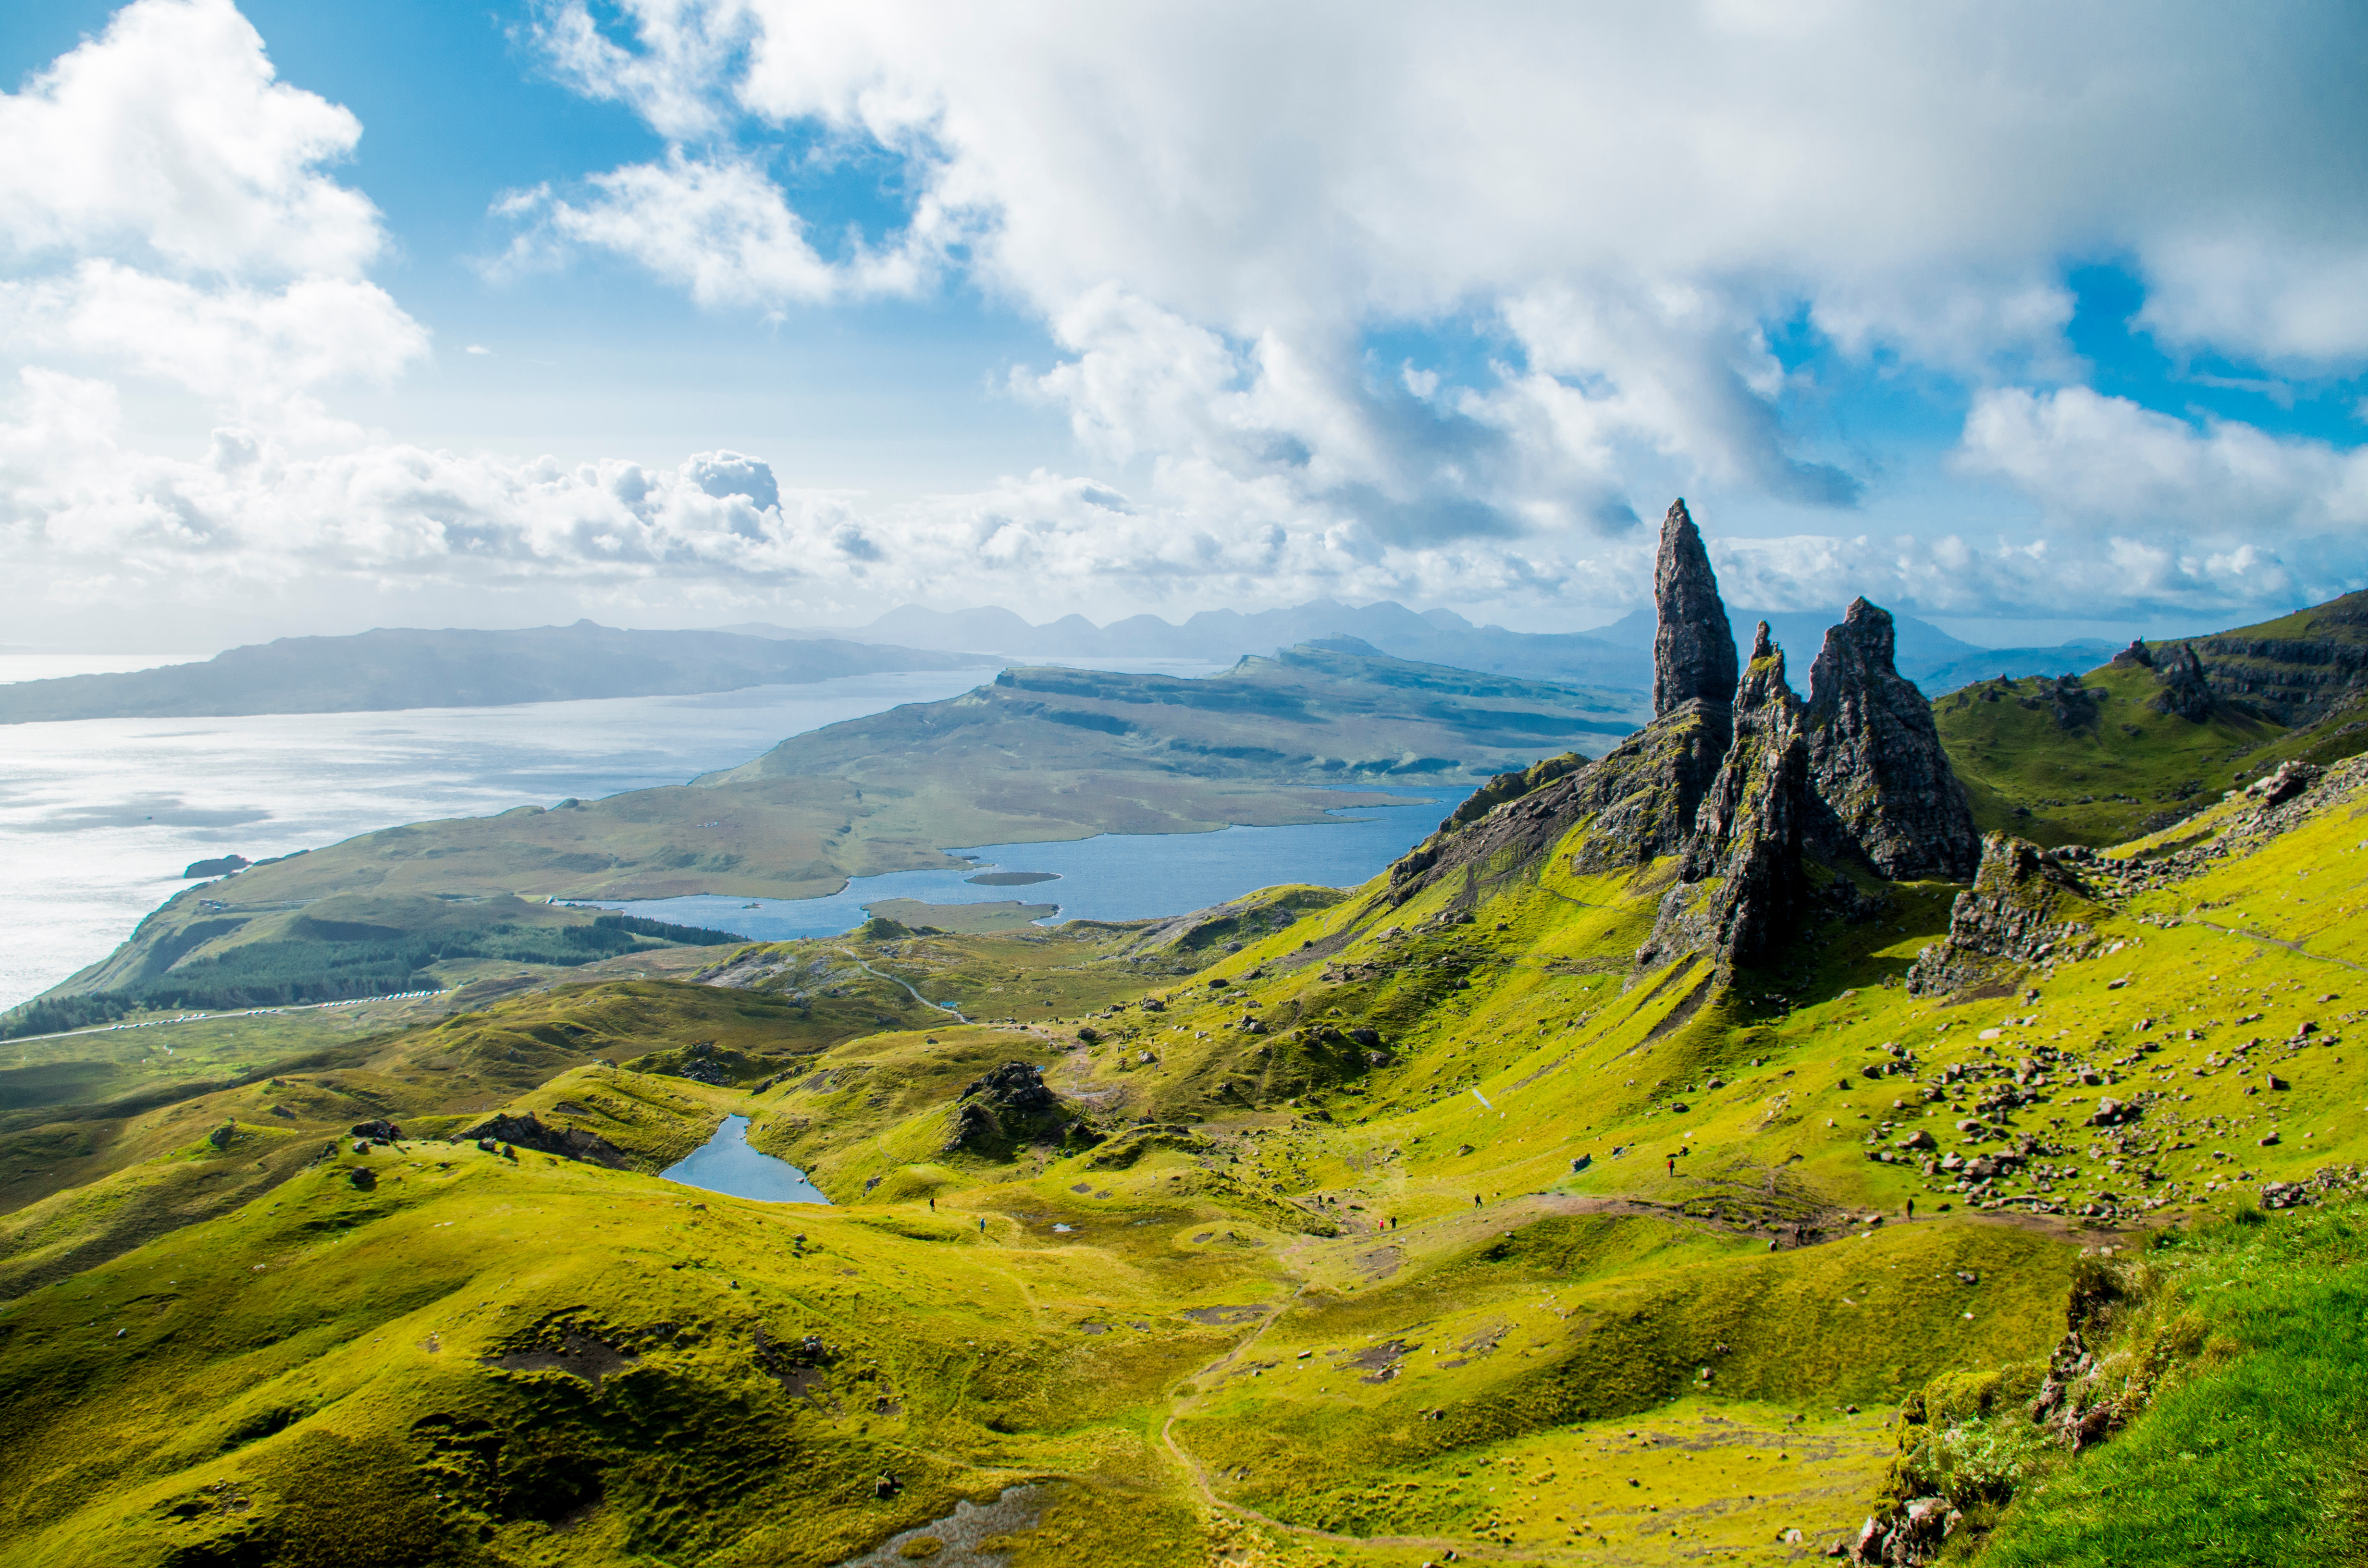 The Old Man of Storr, un sommet situé sur l'île de Skye, en Écosse. © Adam, Adobe Stock